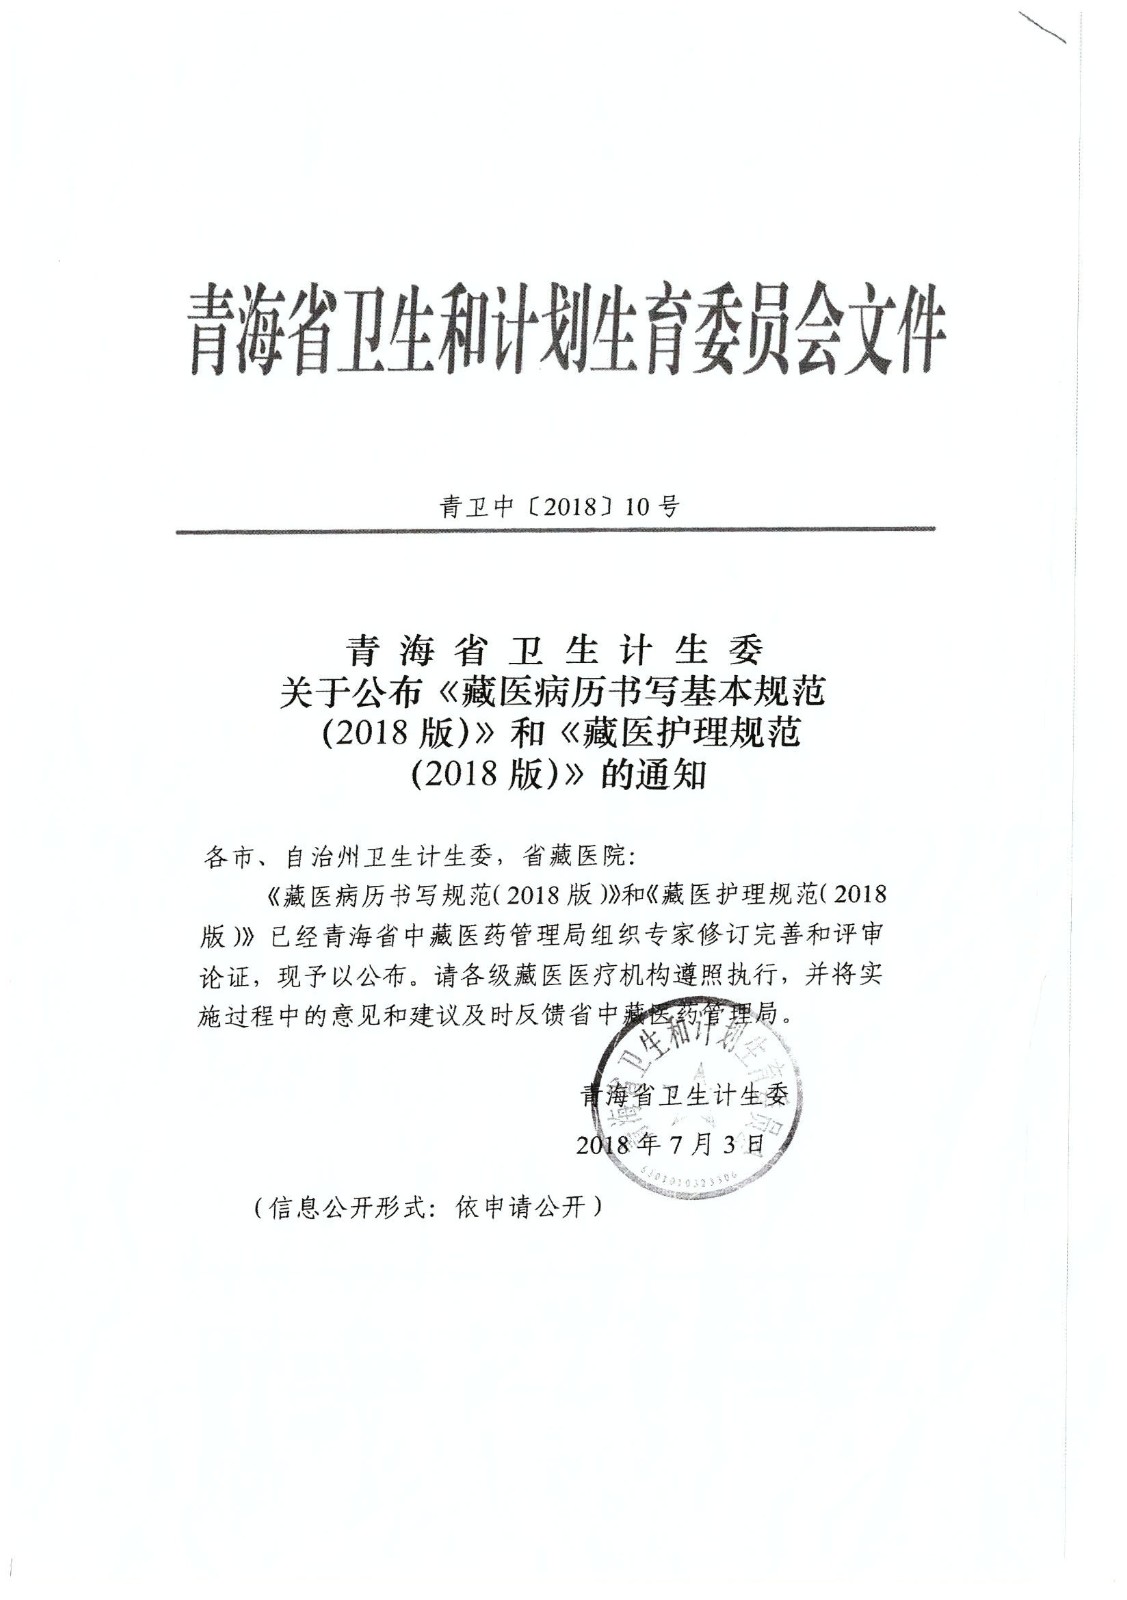 青海省卫生计生委“关于公布《藏医病历书写基本规范》和《藏医护理规范》的通知”1.jpg